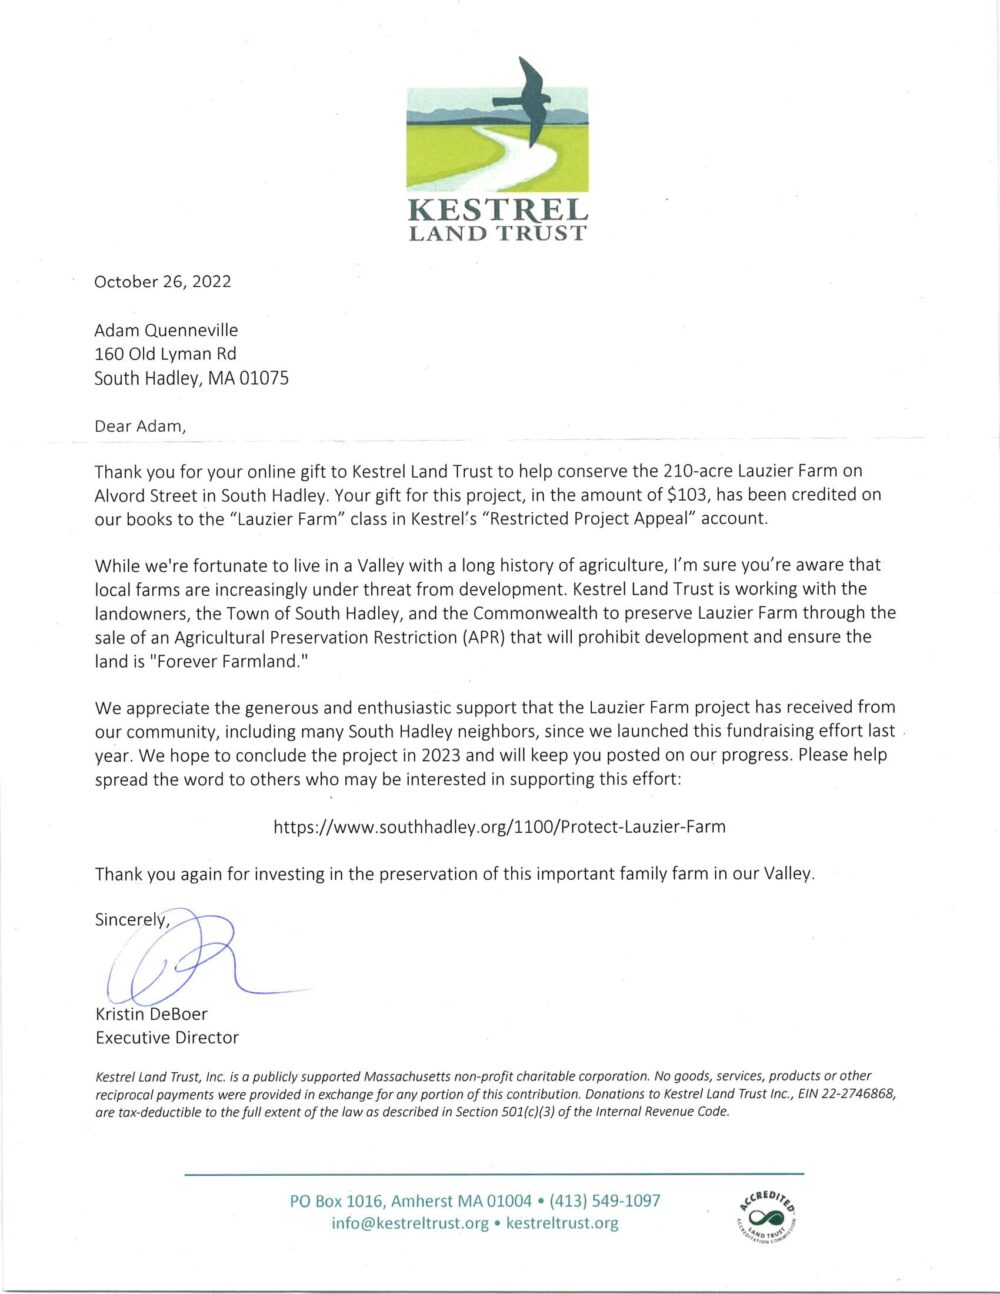 2022 Donation Letter from Kestrel Land Trust